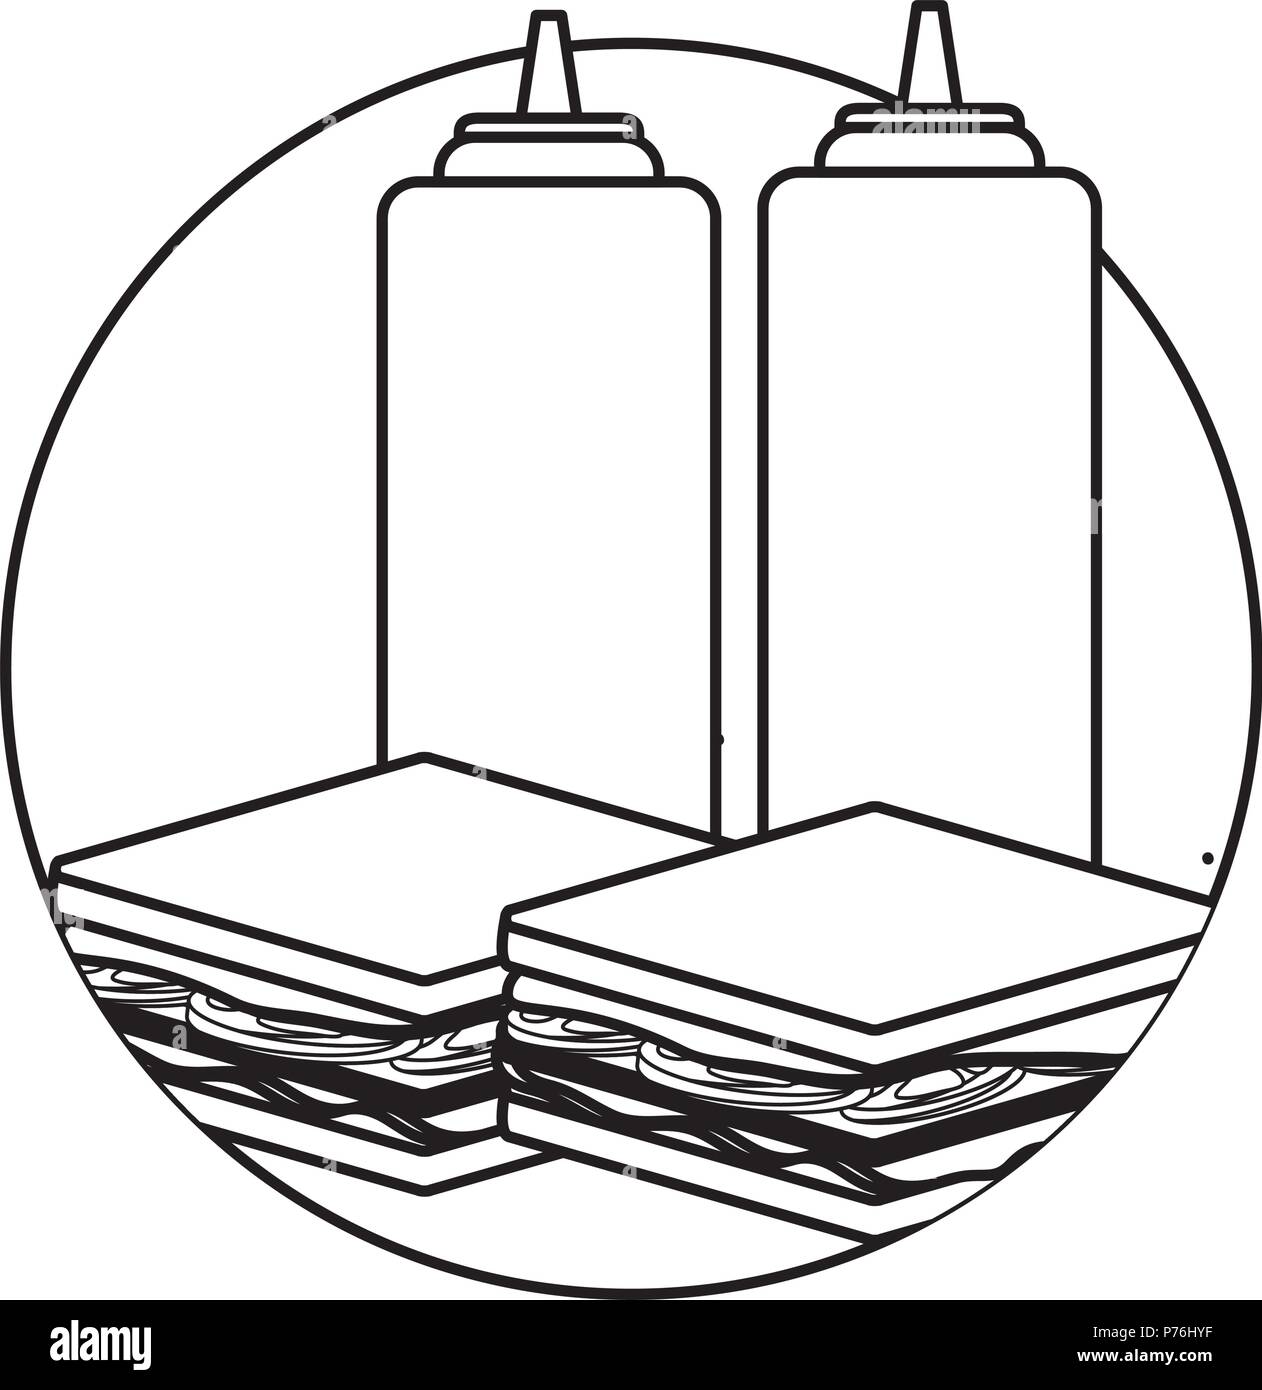 Sandwiches y botellas de salsa sobre fondo blanco, ilustración vectorial Ilustración del Vector